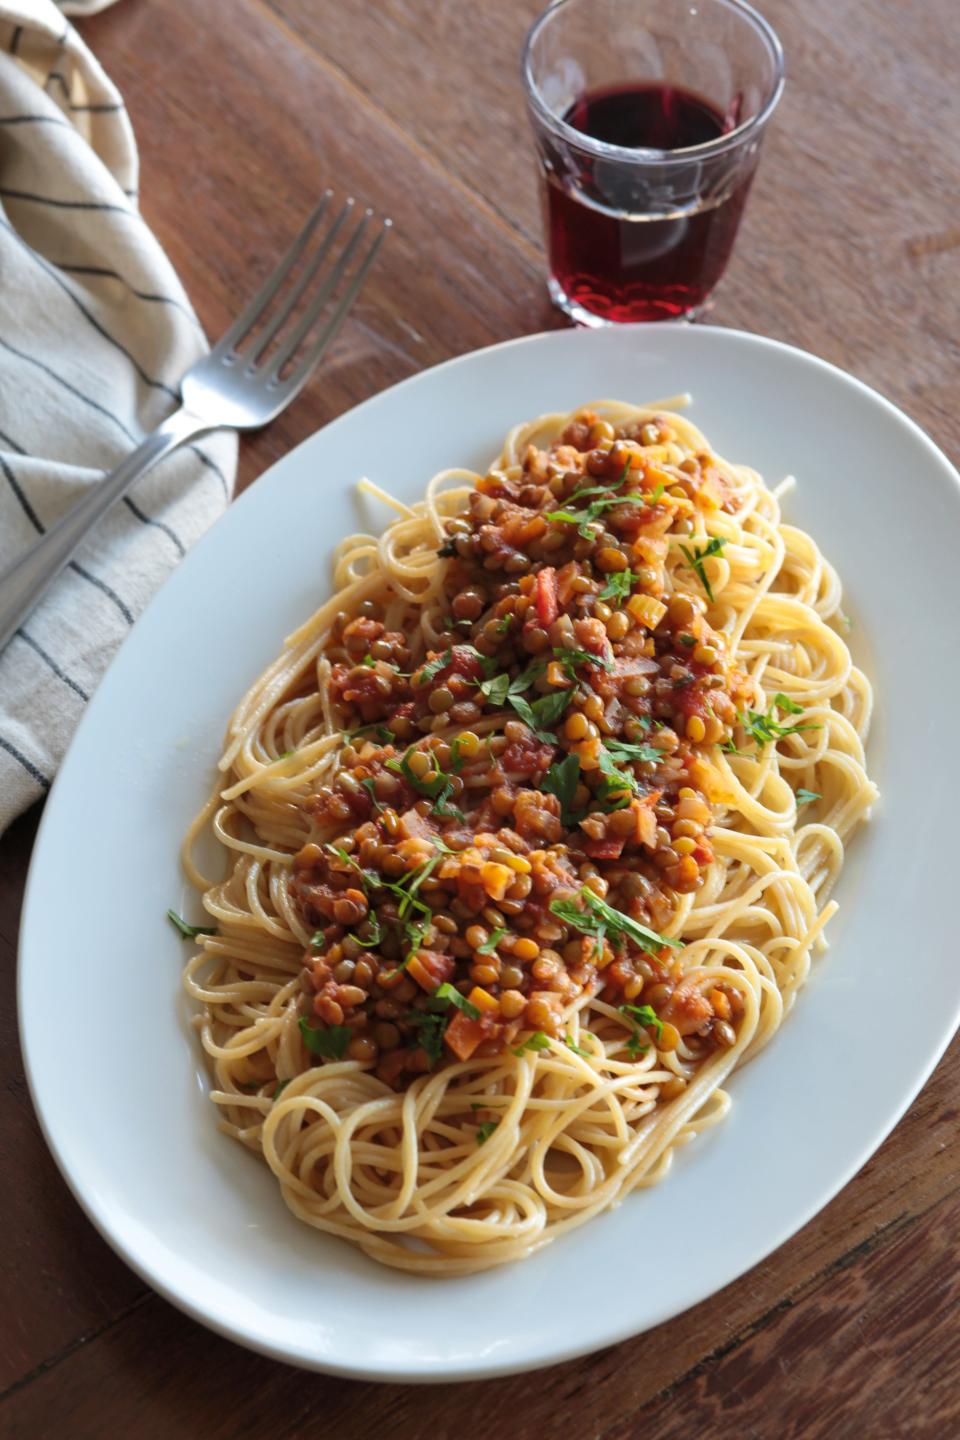 Spaghetti with a lentil sauce